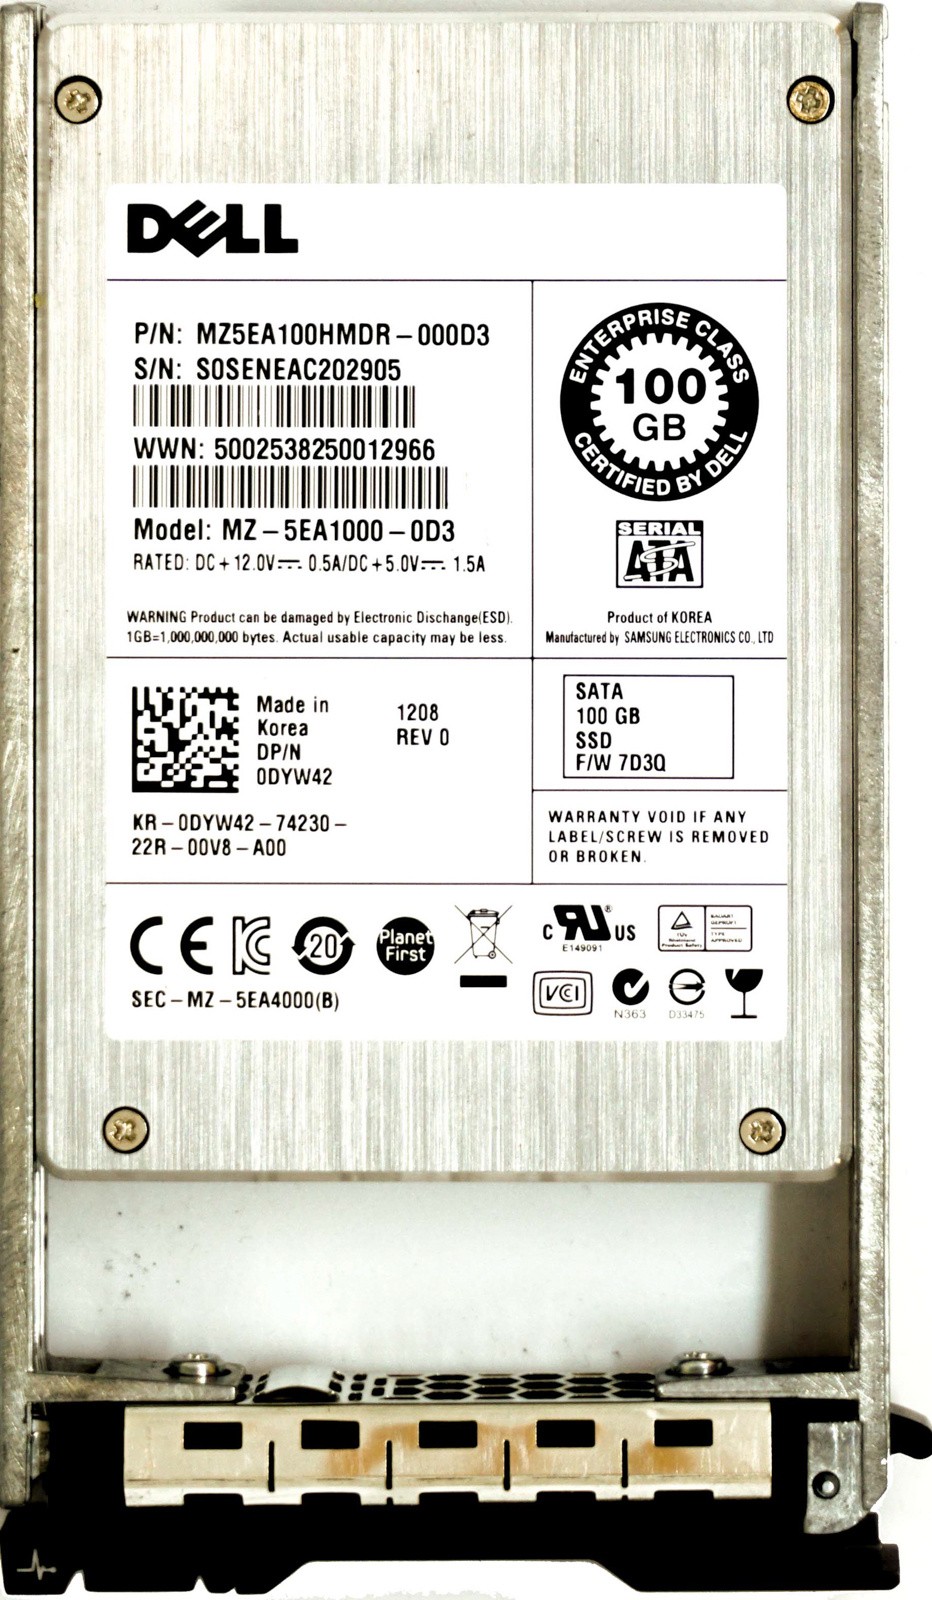 Dell (DYW412) 100GB SATA II (SFF) 3Gb/s in 11G Hot-Swap Caddy